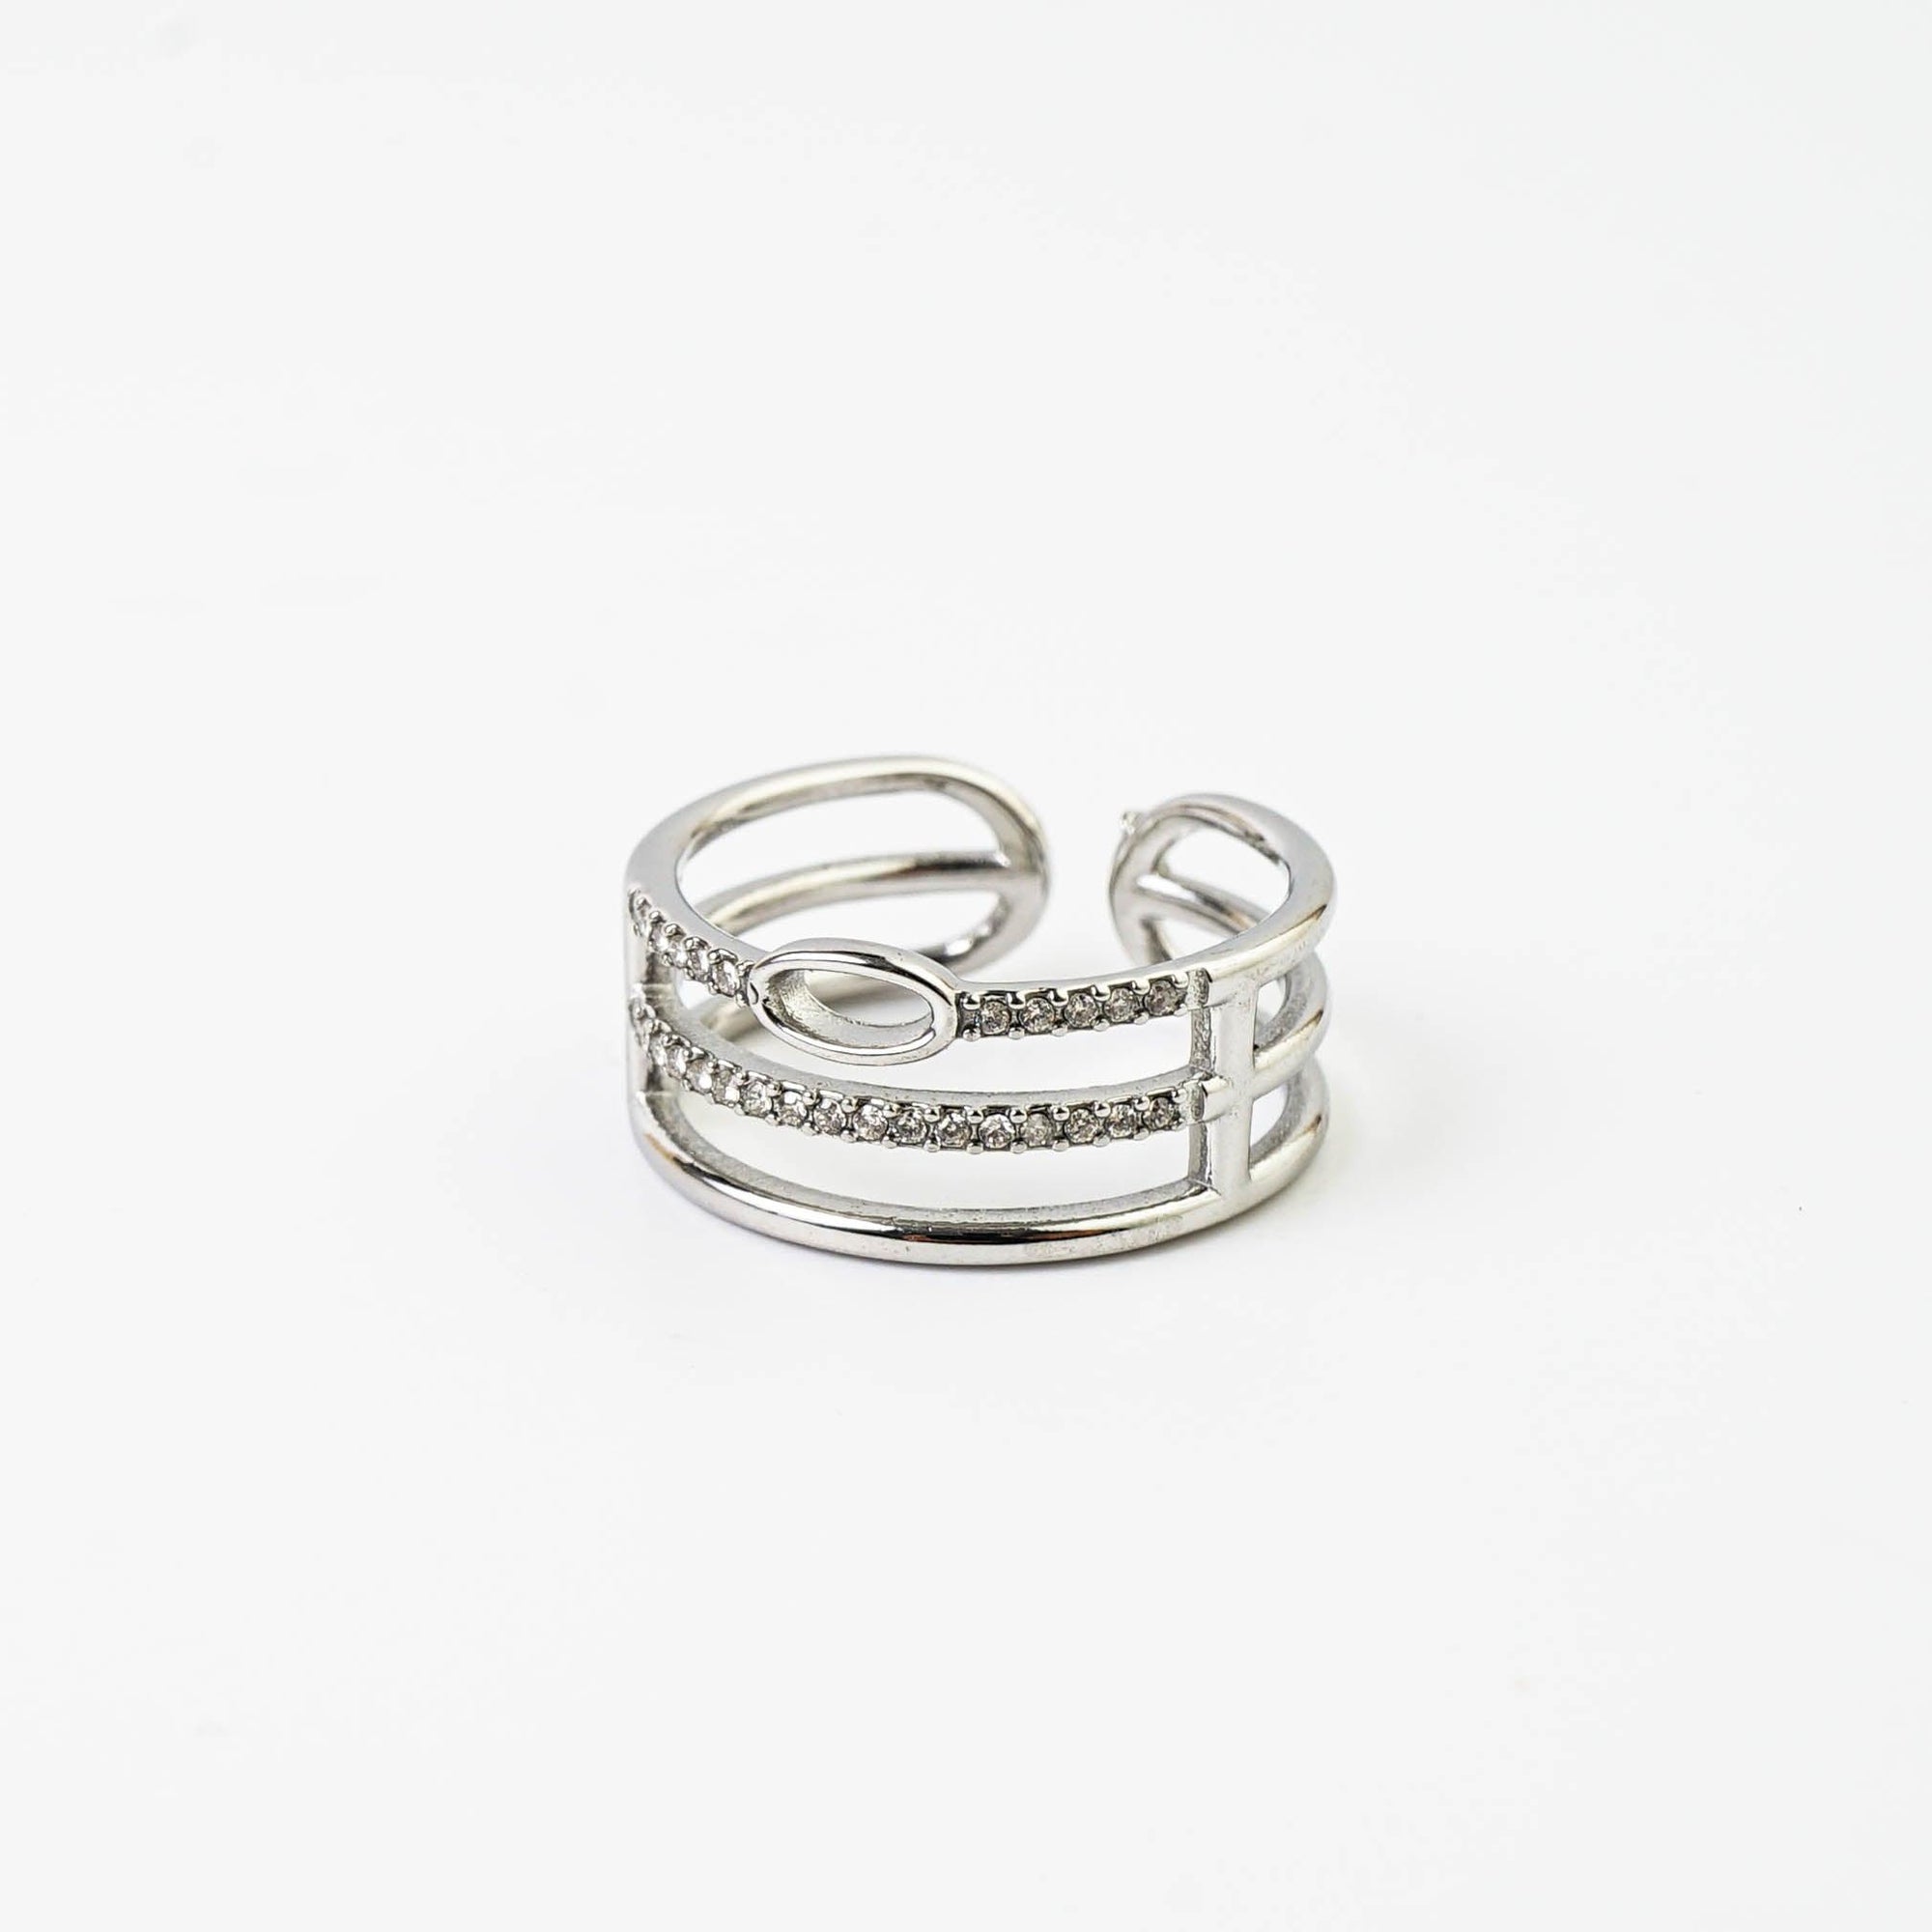 COMPLEX RING - Lynott Jewellery